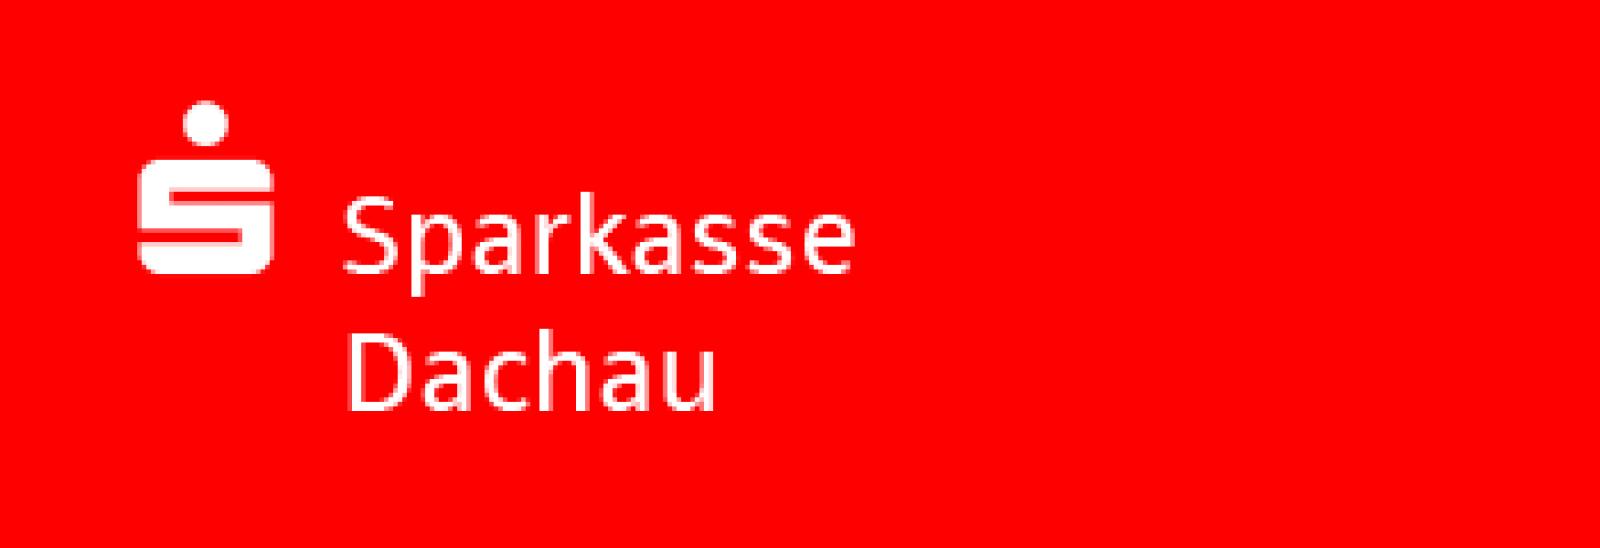 Sparkasse Dachau Logo